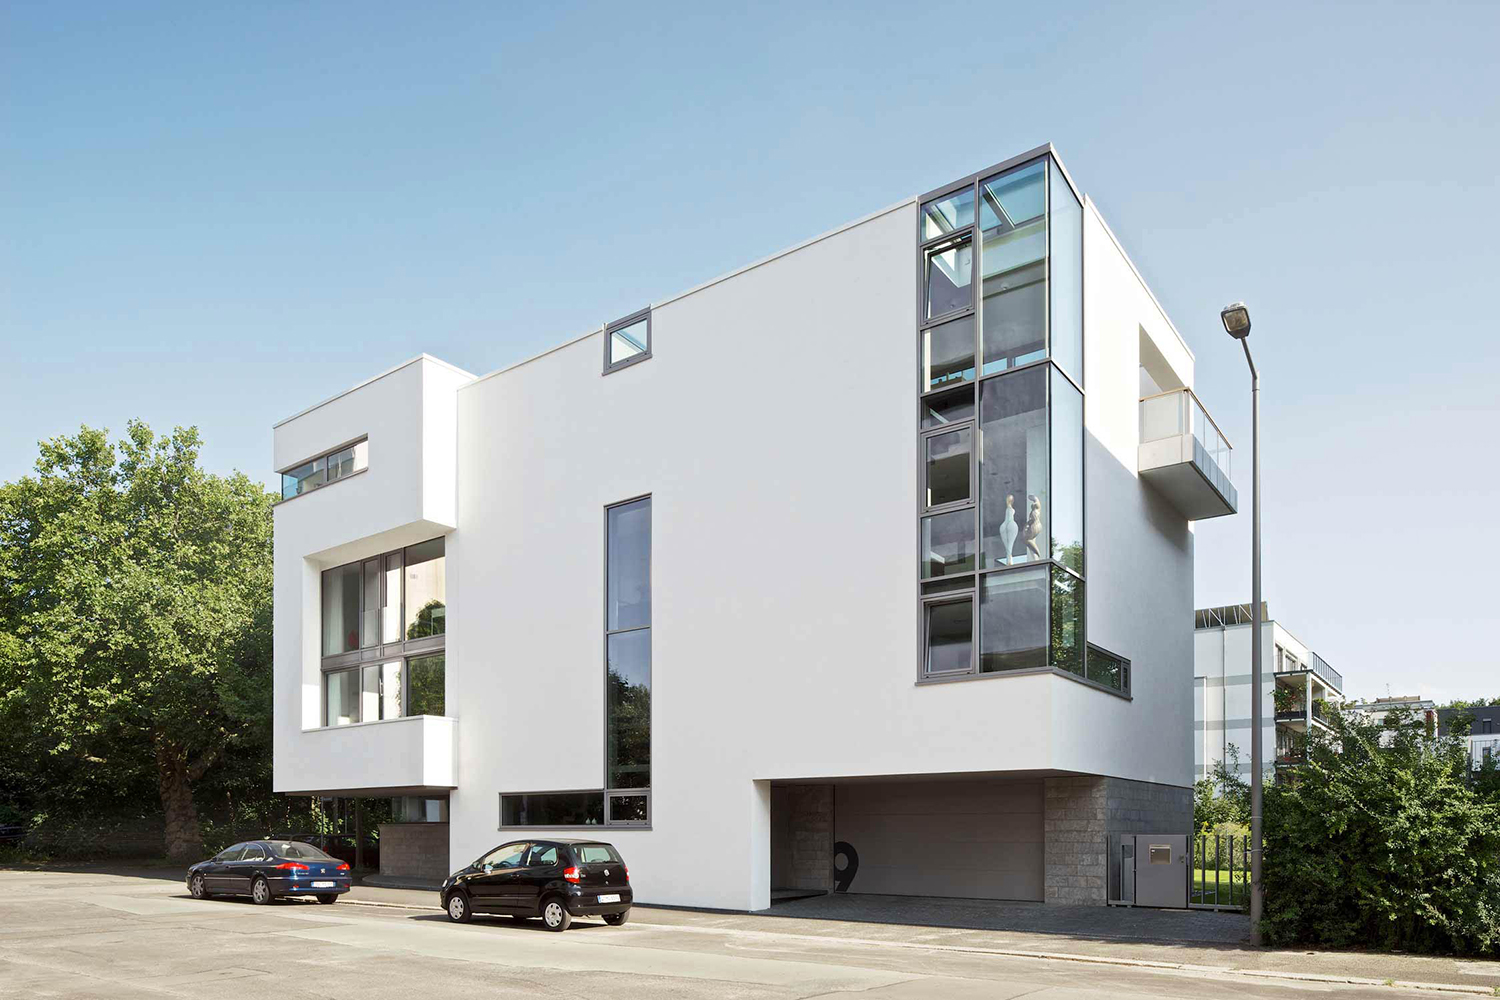 Haus Boscha - Mario Hein architektursalon - Architektur- und Innenarchitekturplanung inklusive Möbel- und Leuchtendesign für den Neubau eines Wohnhauses